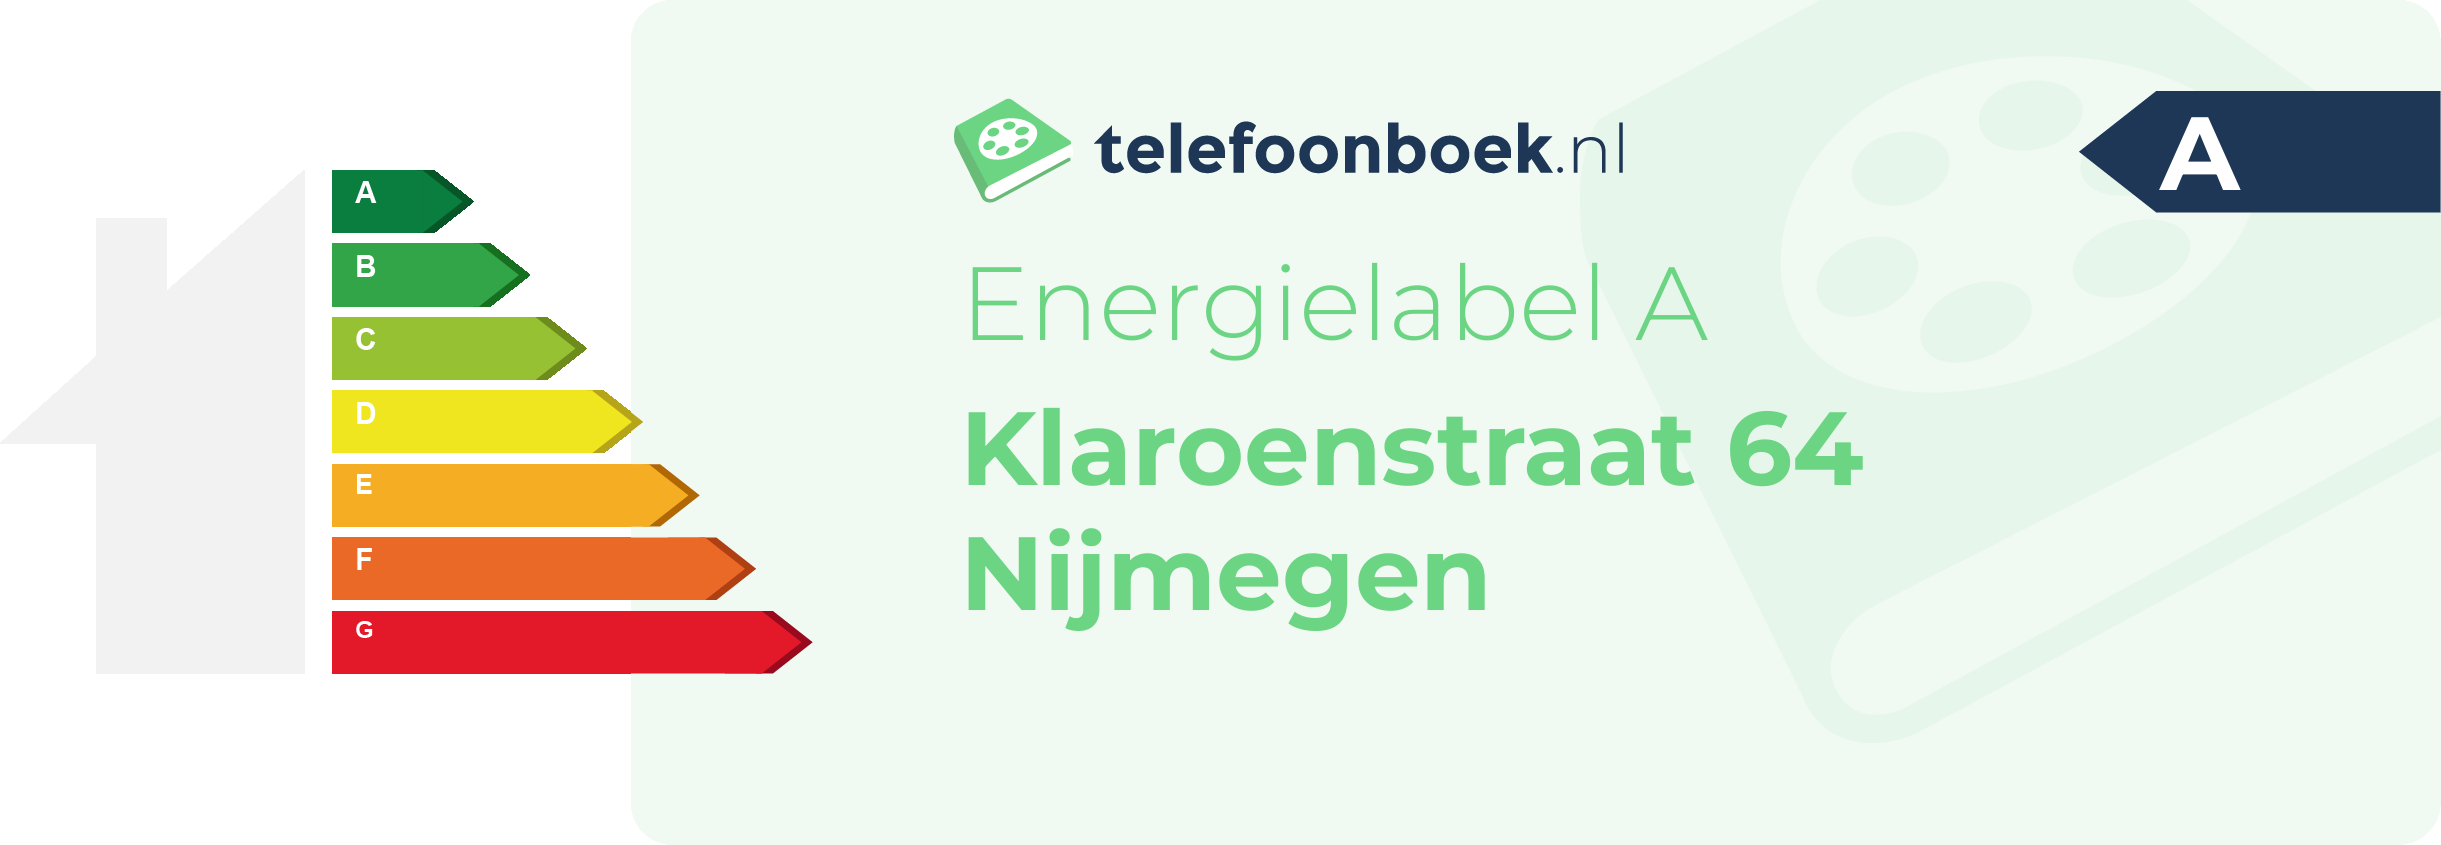 Energielabel Klaroenstraat 64 Nijmegen